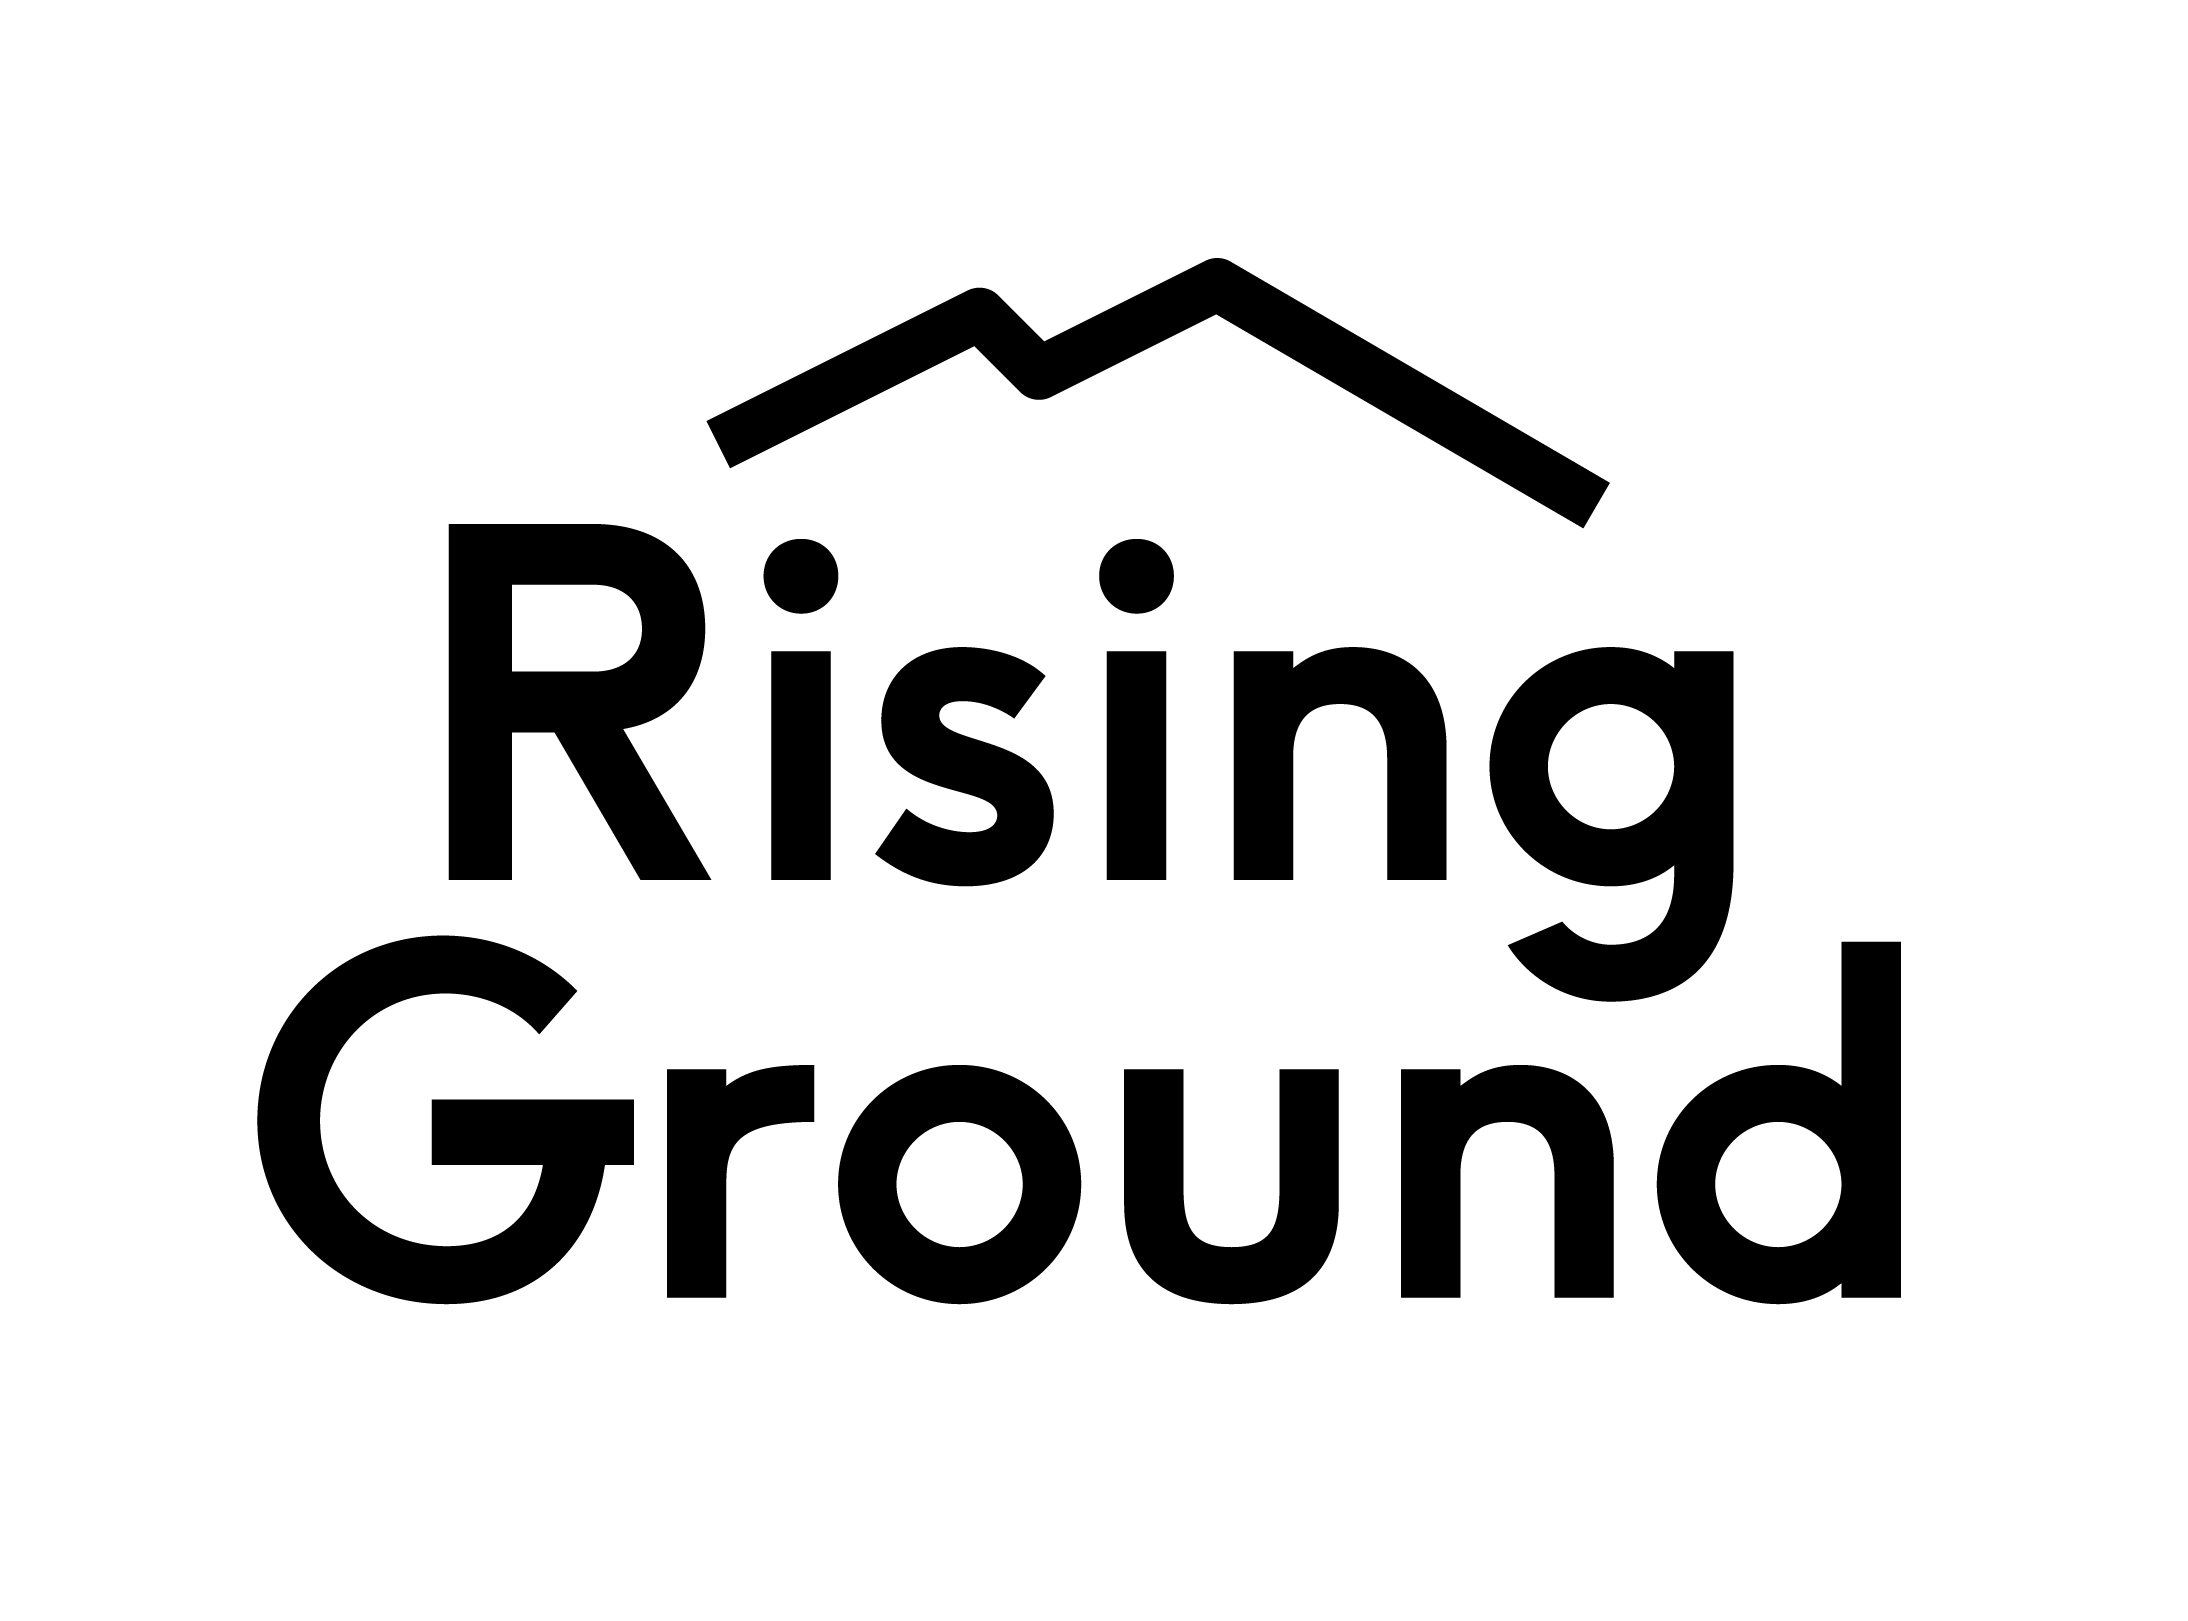 Rising Ground